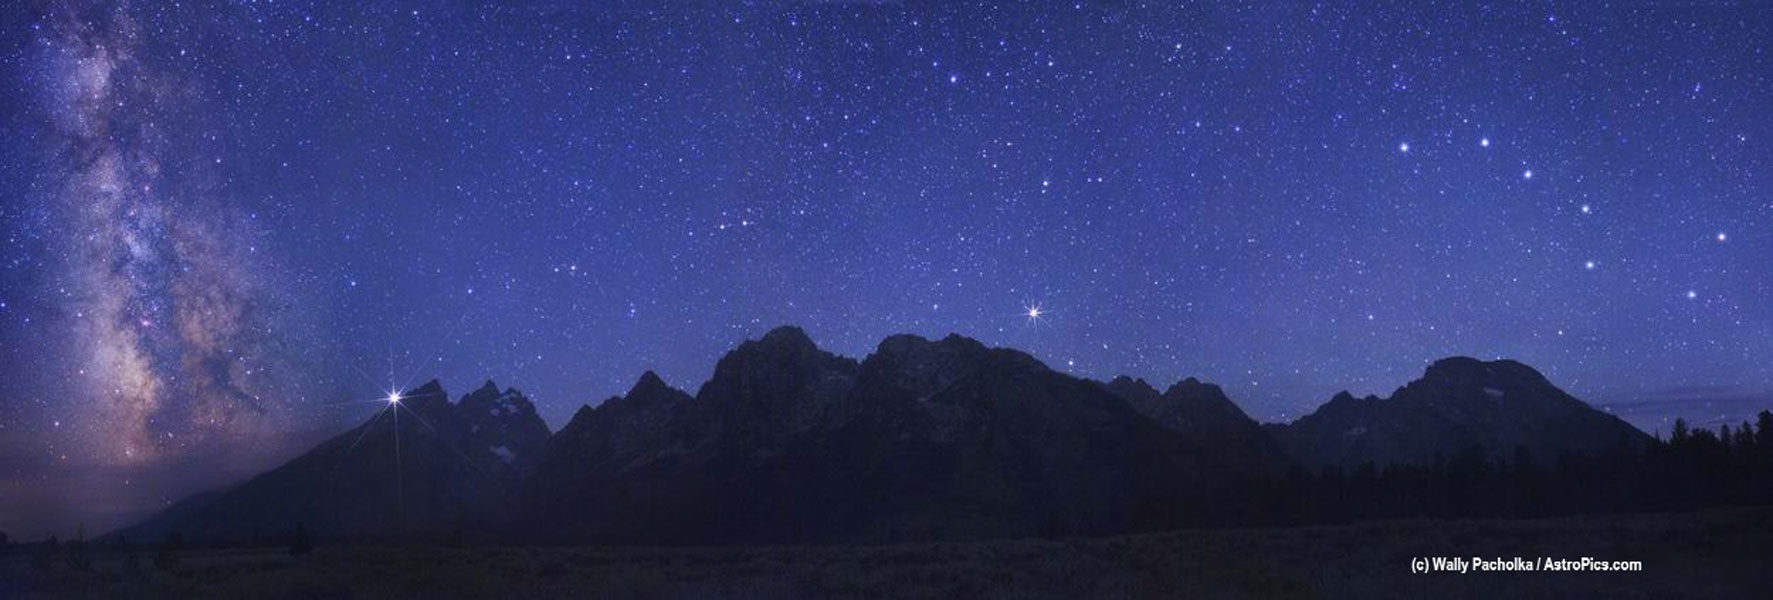 Über der Teton Range in den USA, die zu den Rocky Mountains gehört, leuchten die Milchstraße, der Planet Jupiter, der helle Stern Arkturus und der Große Wagen.